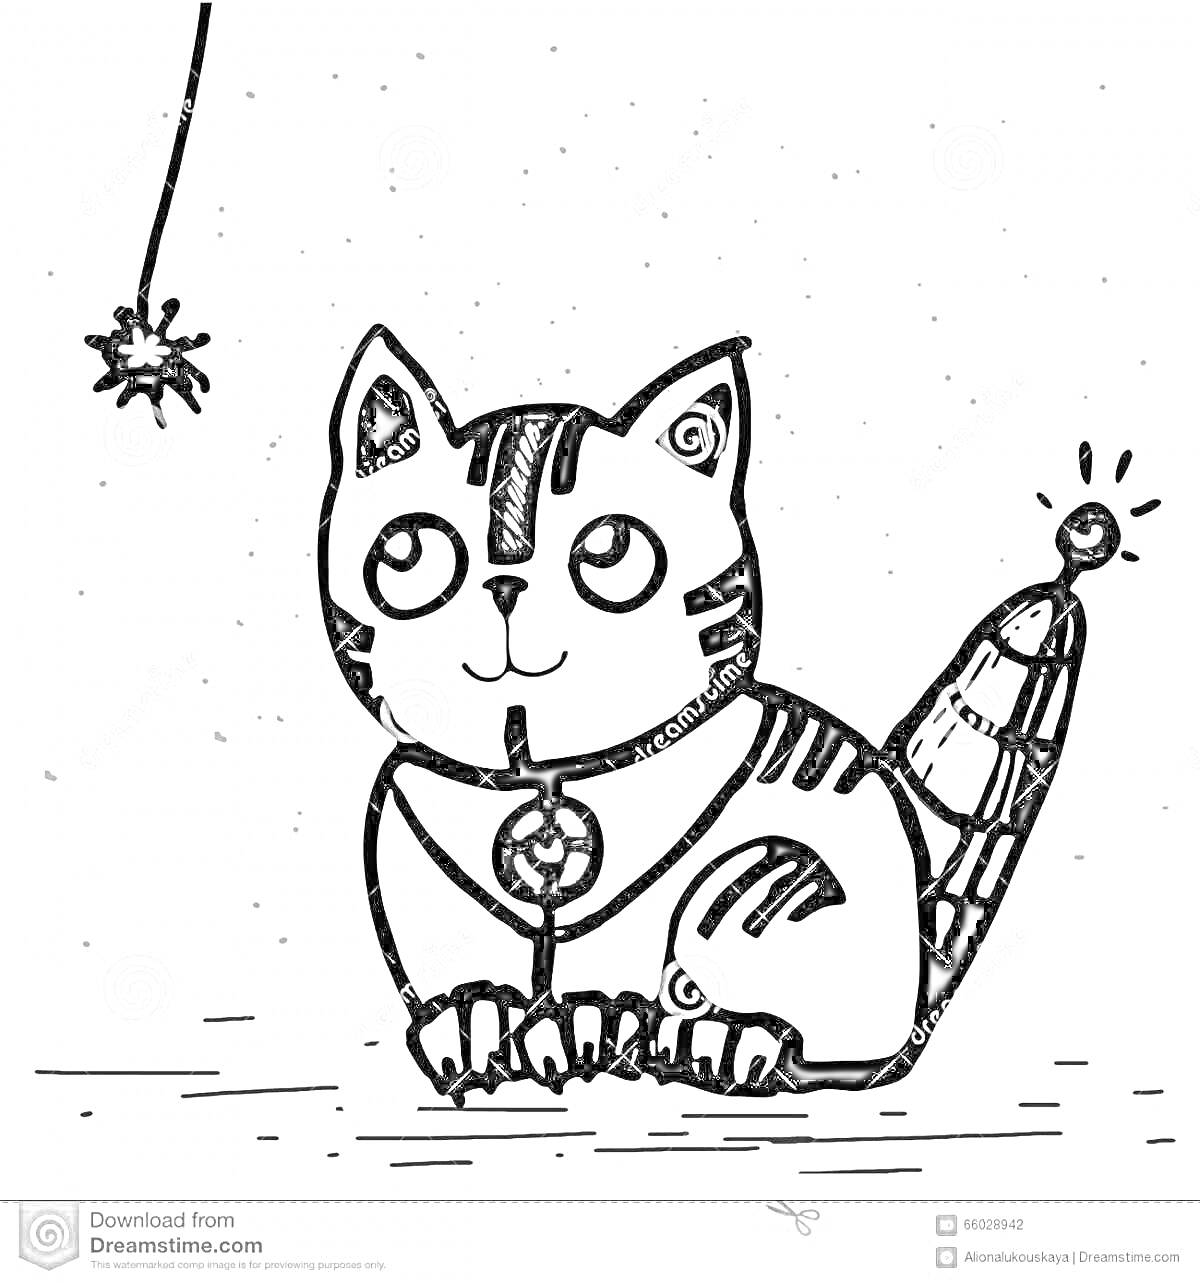 Раскраска Кот робот с полосатым хвостом-антенной и игрушкой на веревке